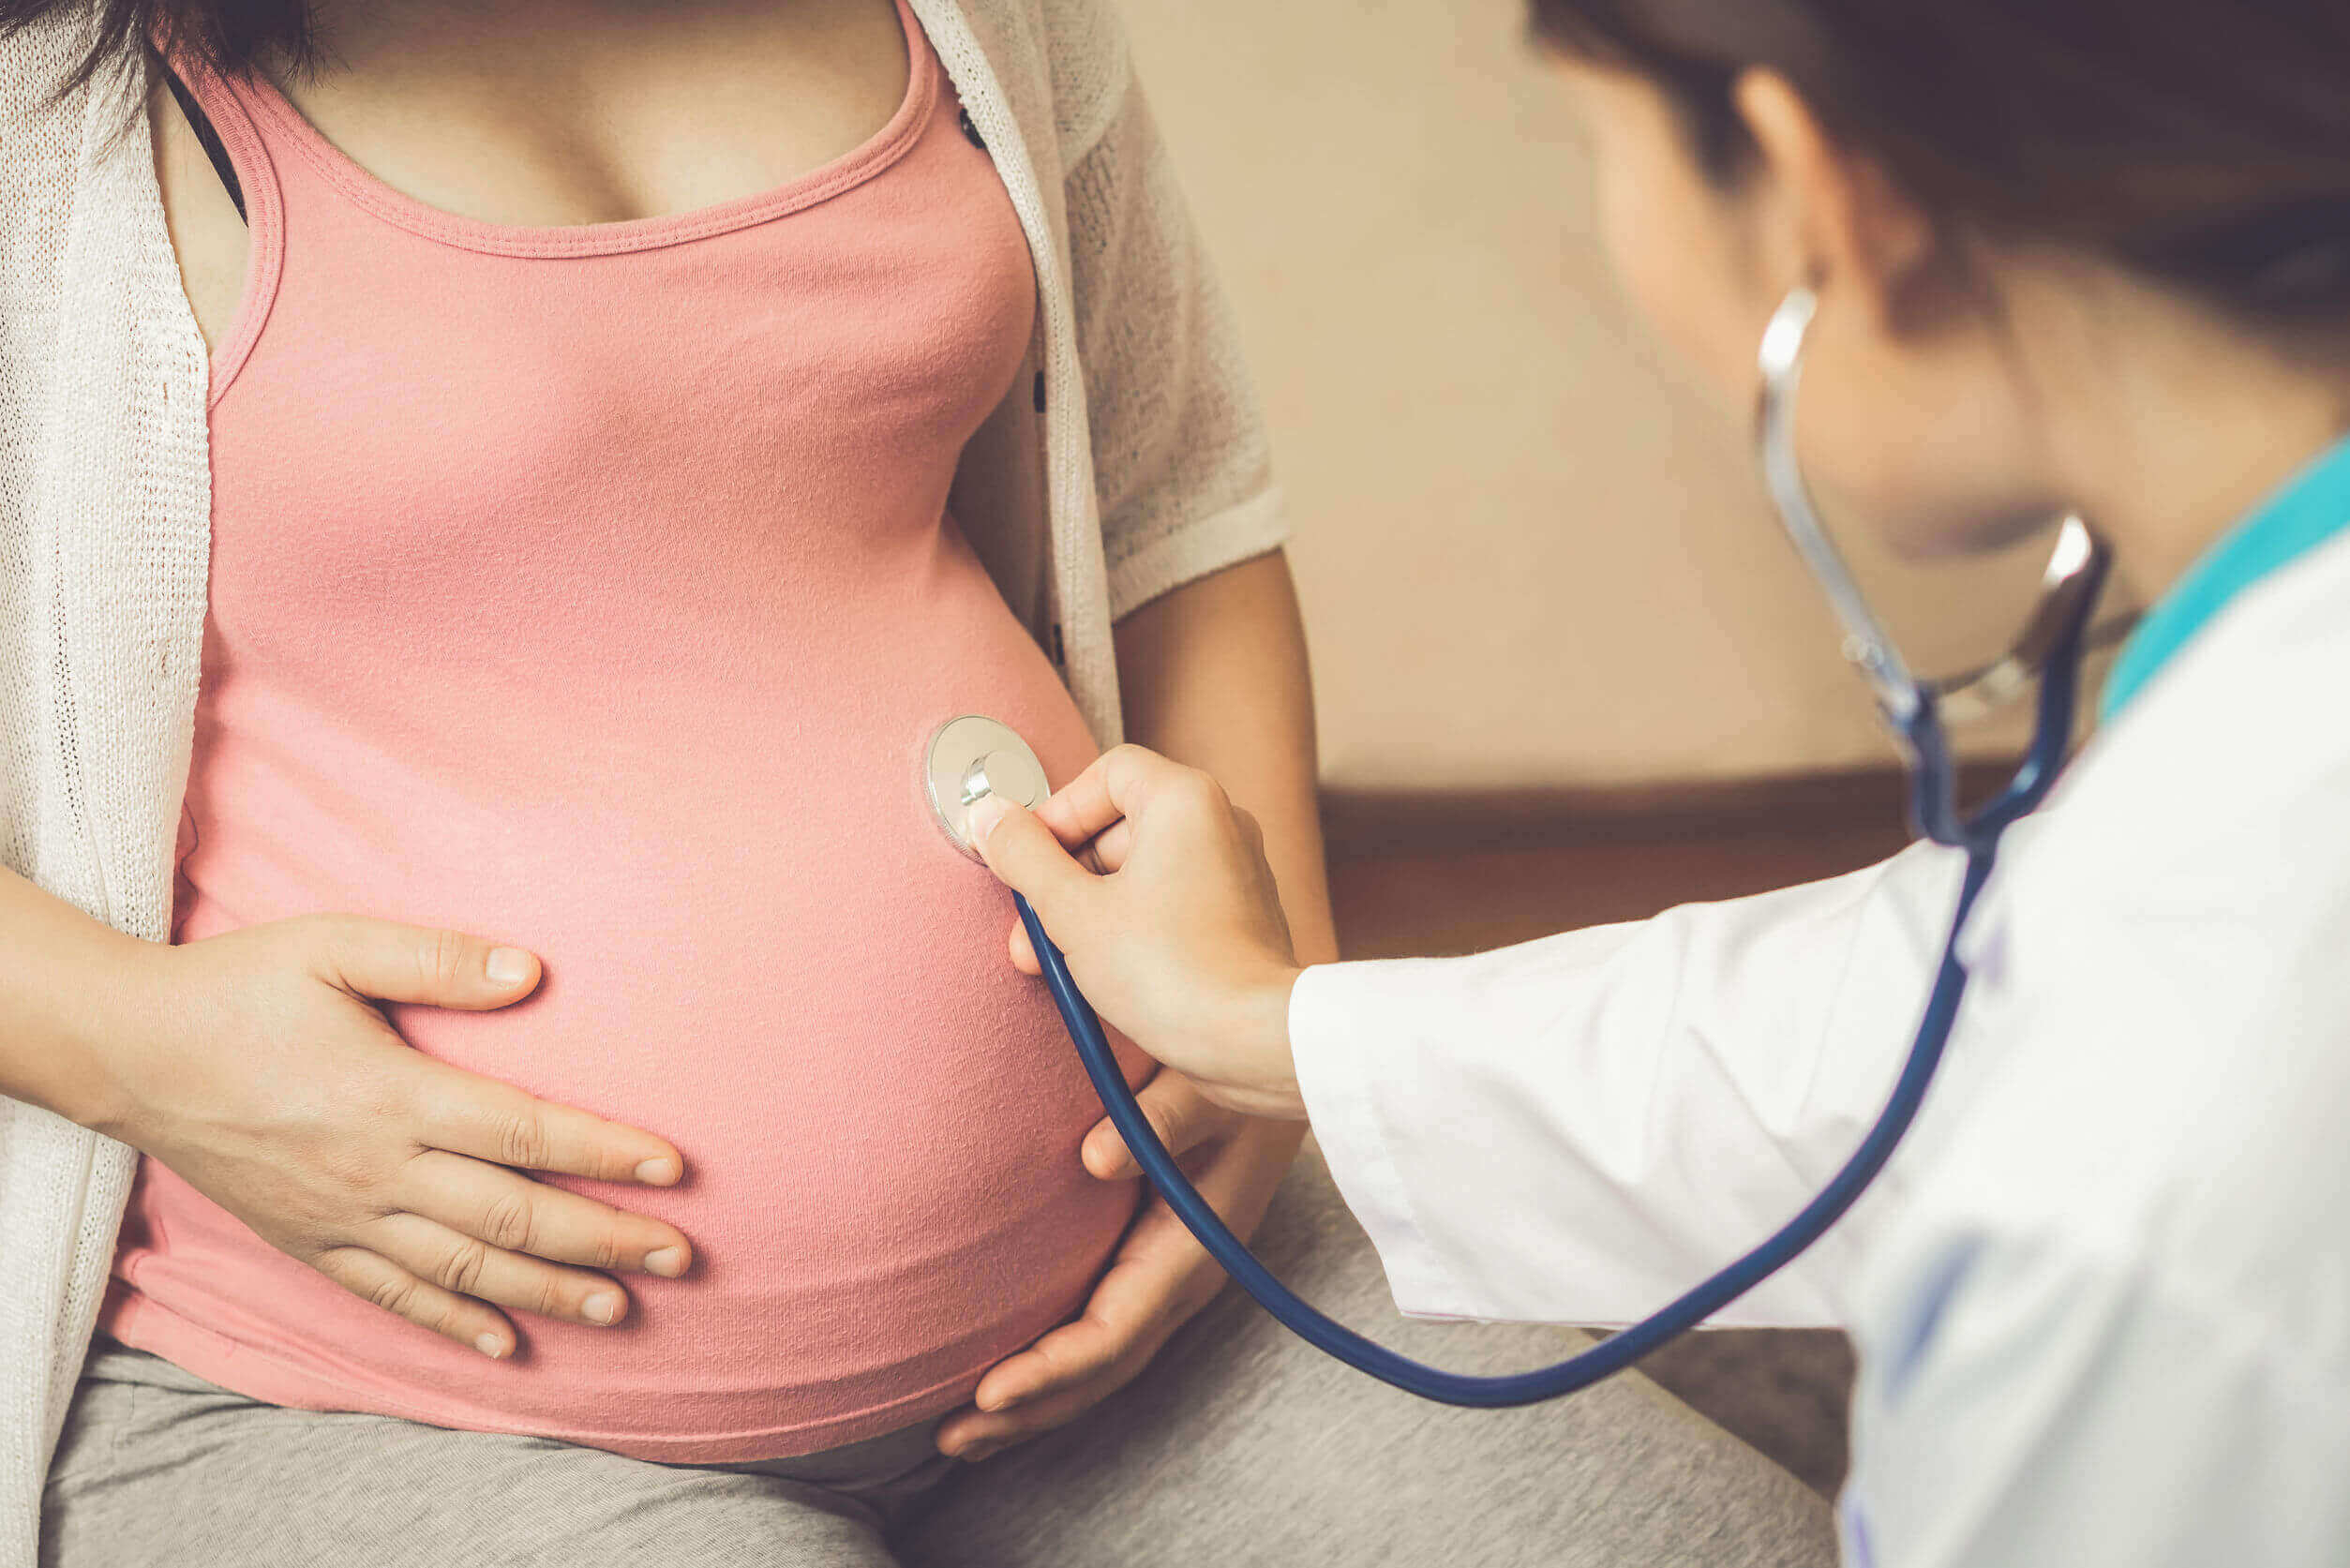 En läkare som lyssnar på en gravid kvinnas mage med ett steteskop.